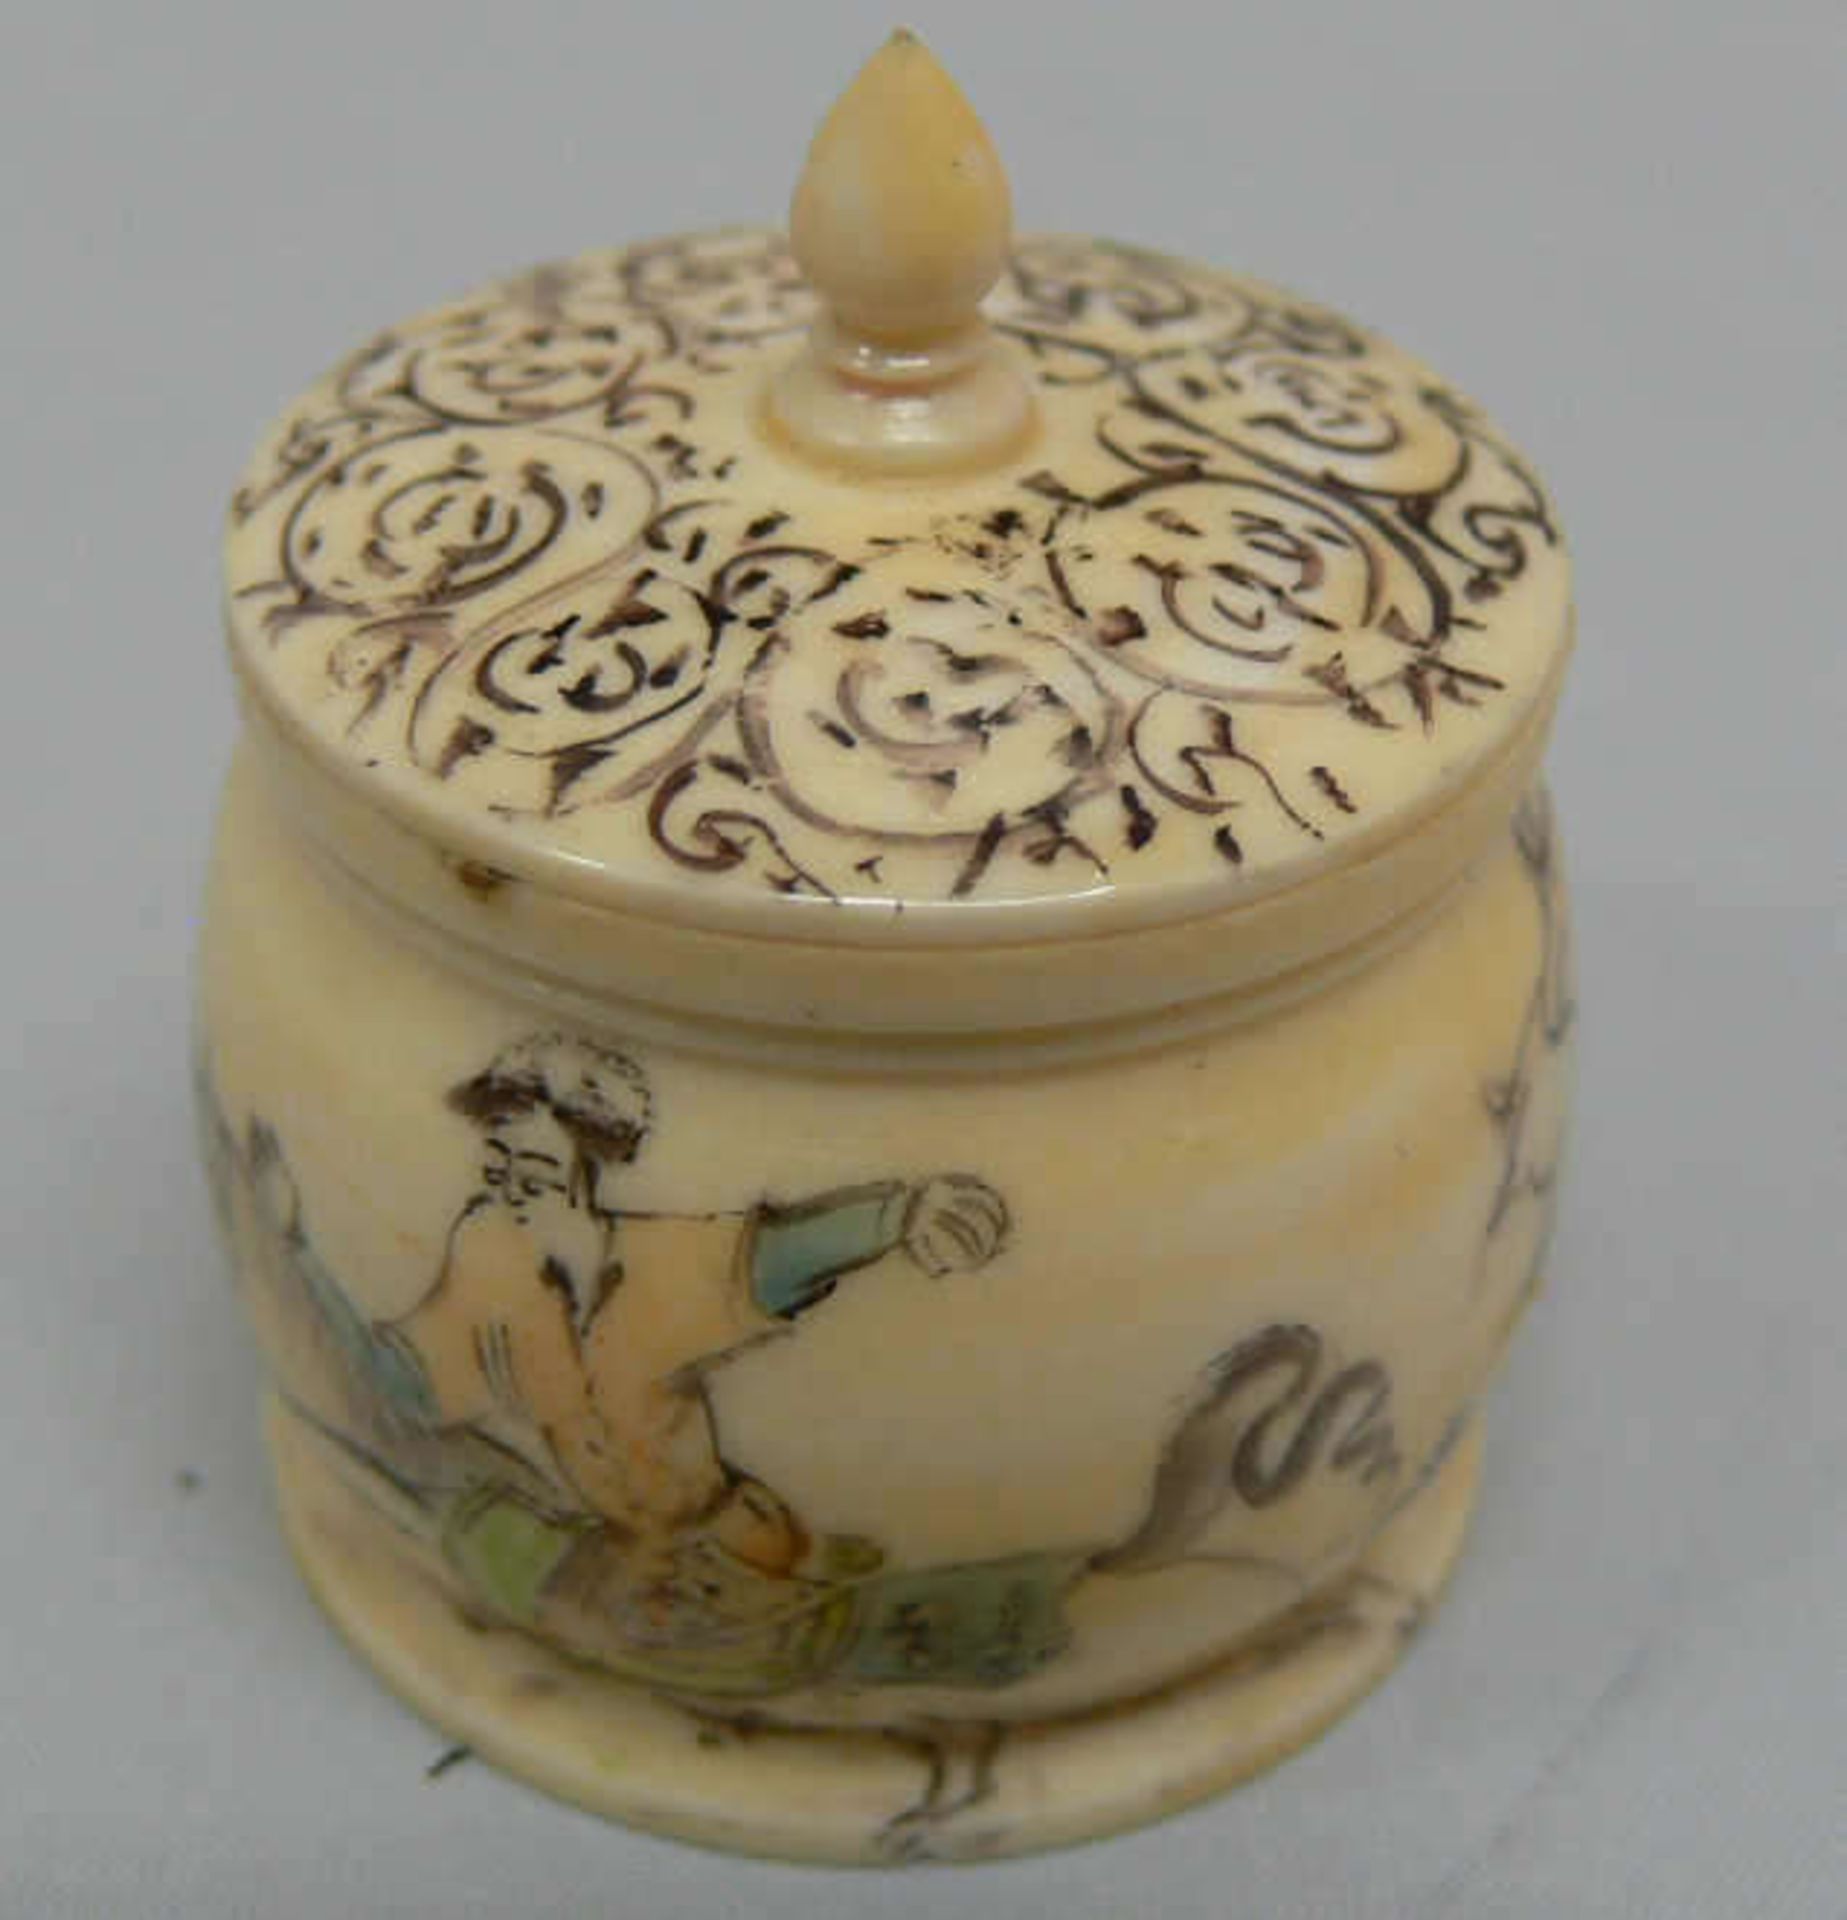 Kleine Elfenbeindose mit Malerei, wohl China, sehr feine Arbeit. Höhe ca. 4 cm. Small ivory box with